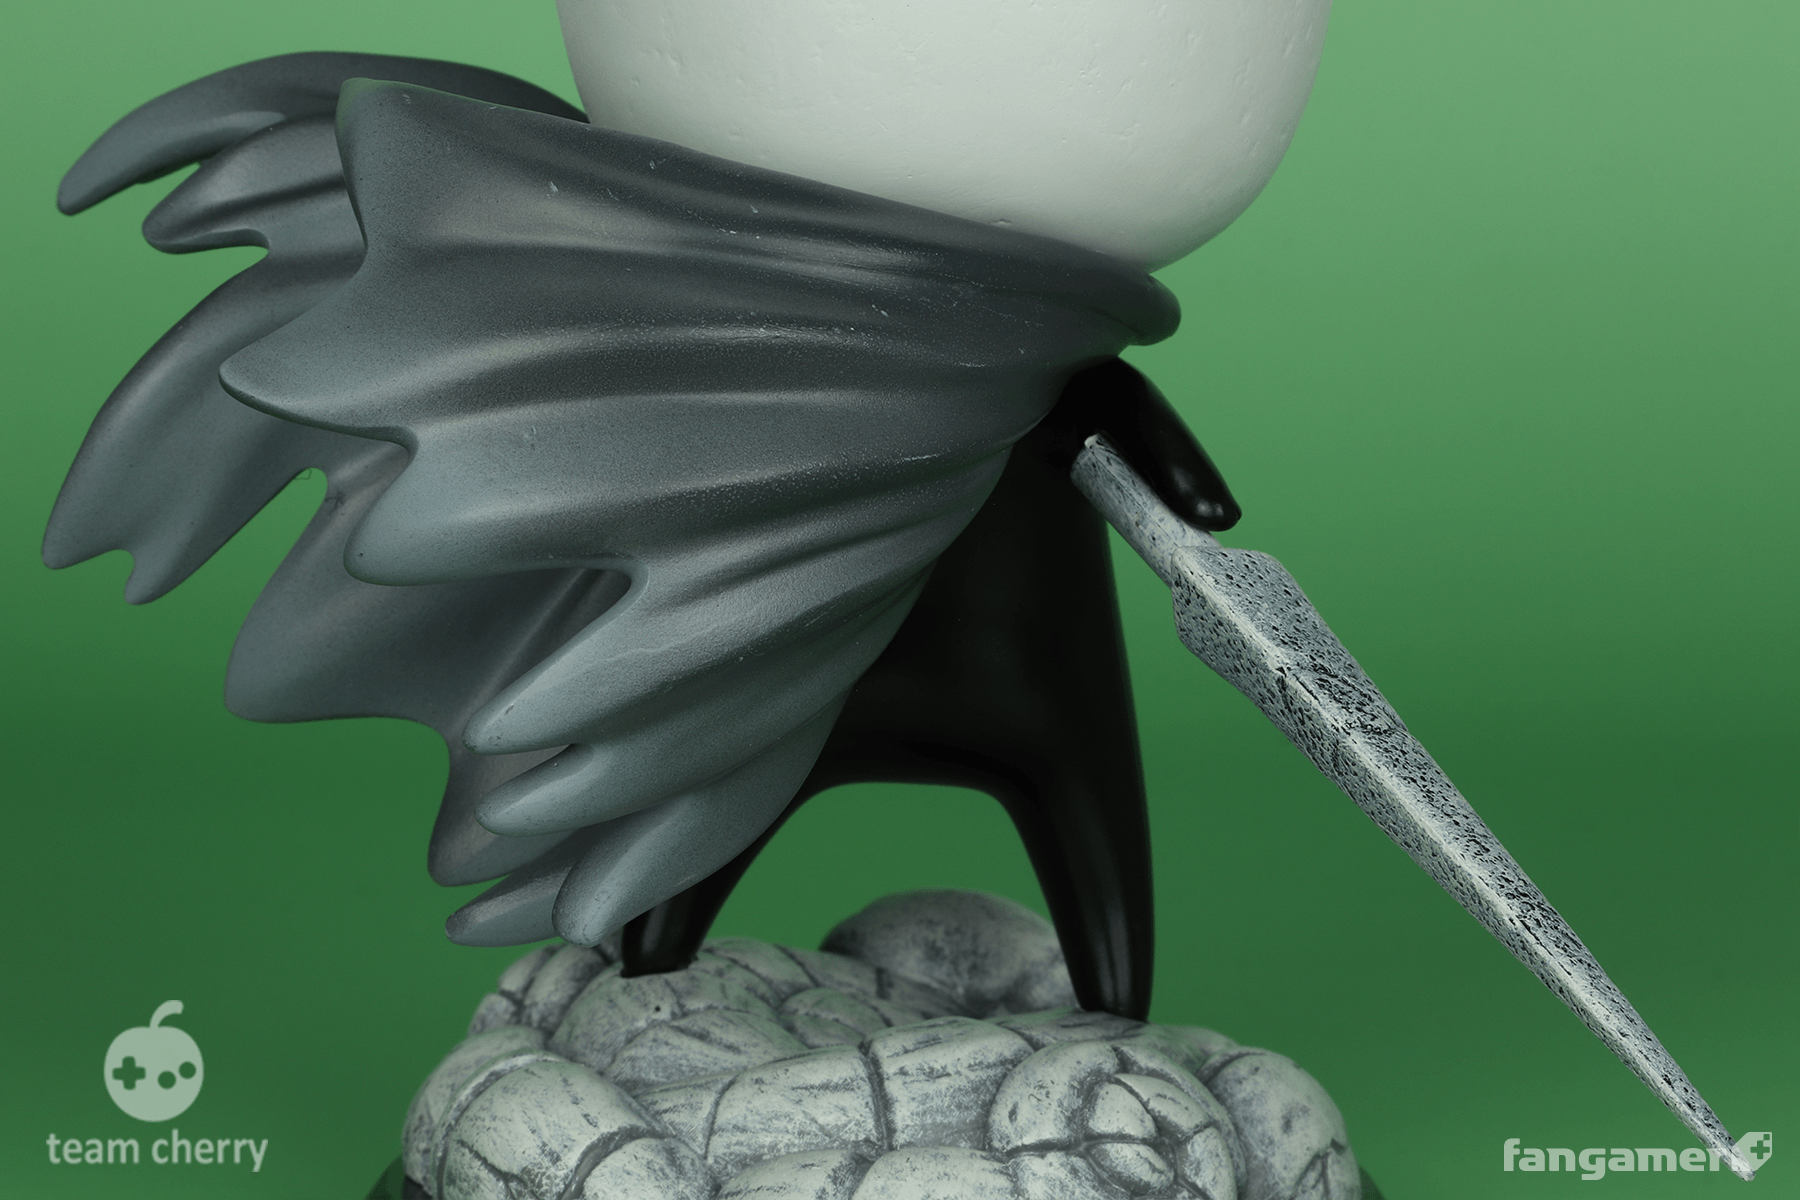 Hollow Knight Mini Figurines - Fangamer